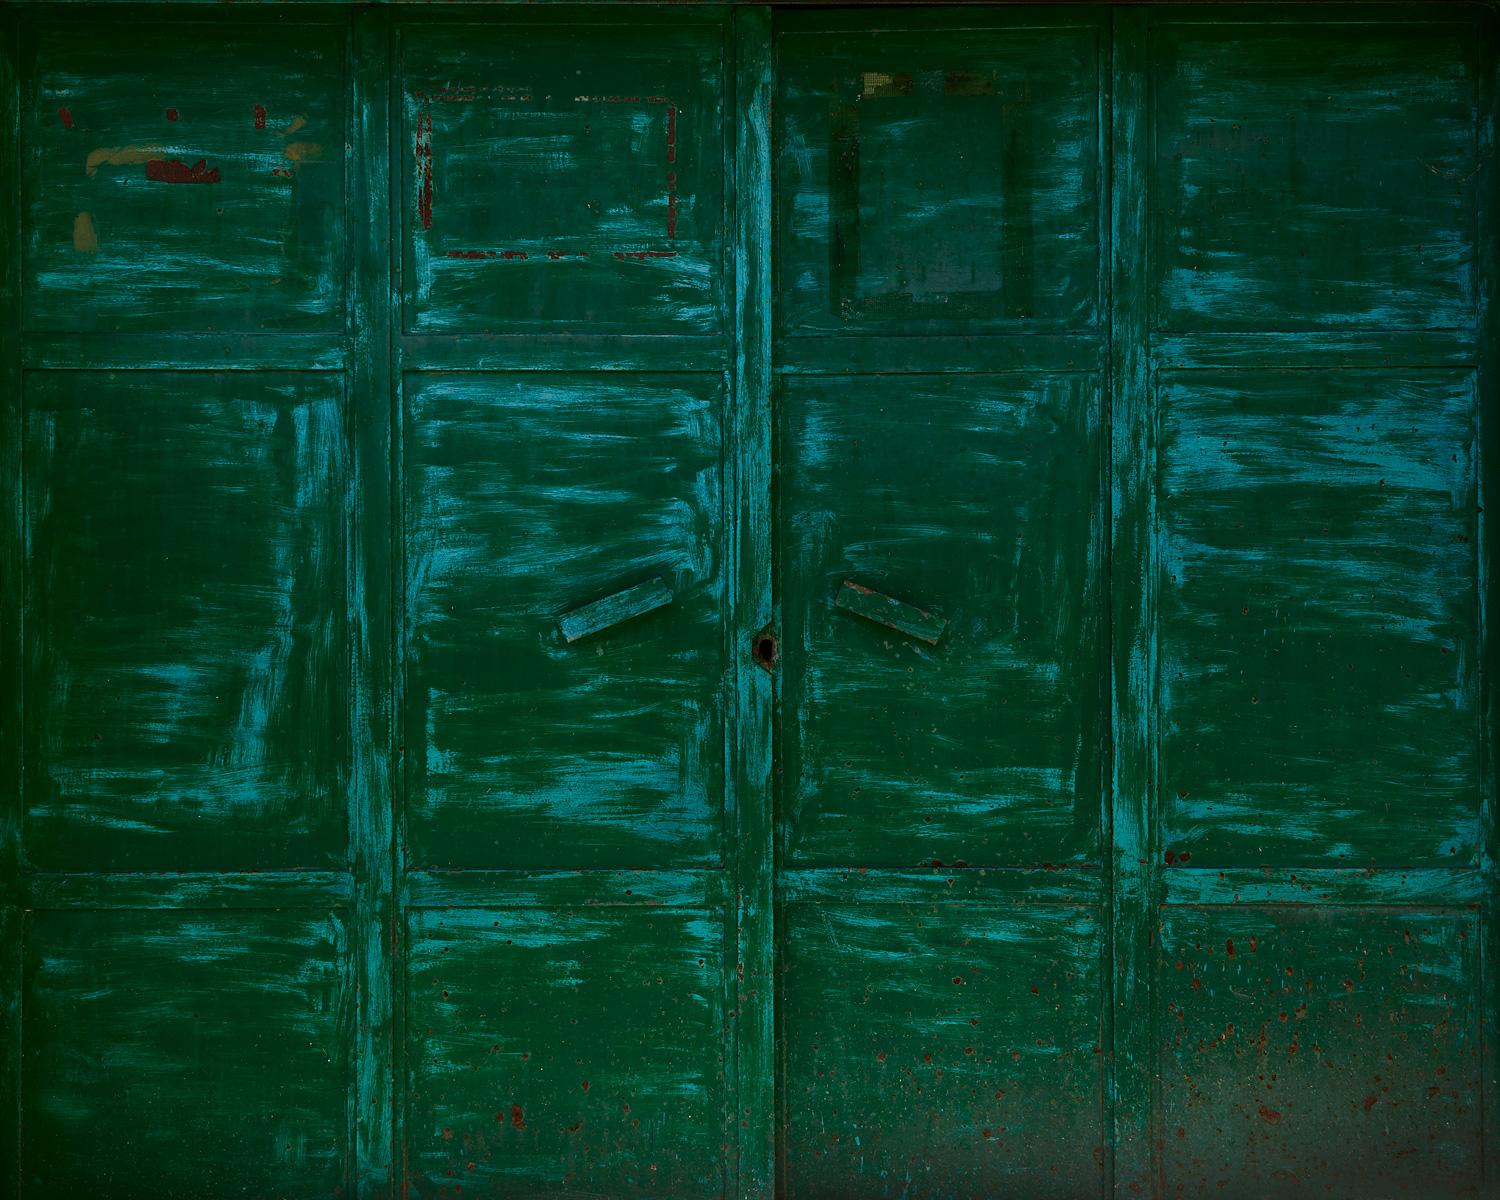 Abstract Photograph Frank Schott - Paysage mural VII (porte verte) - abstraction de textures urbaines et de couleurs des plus pâles